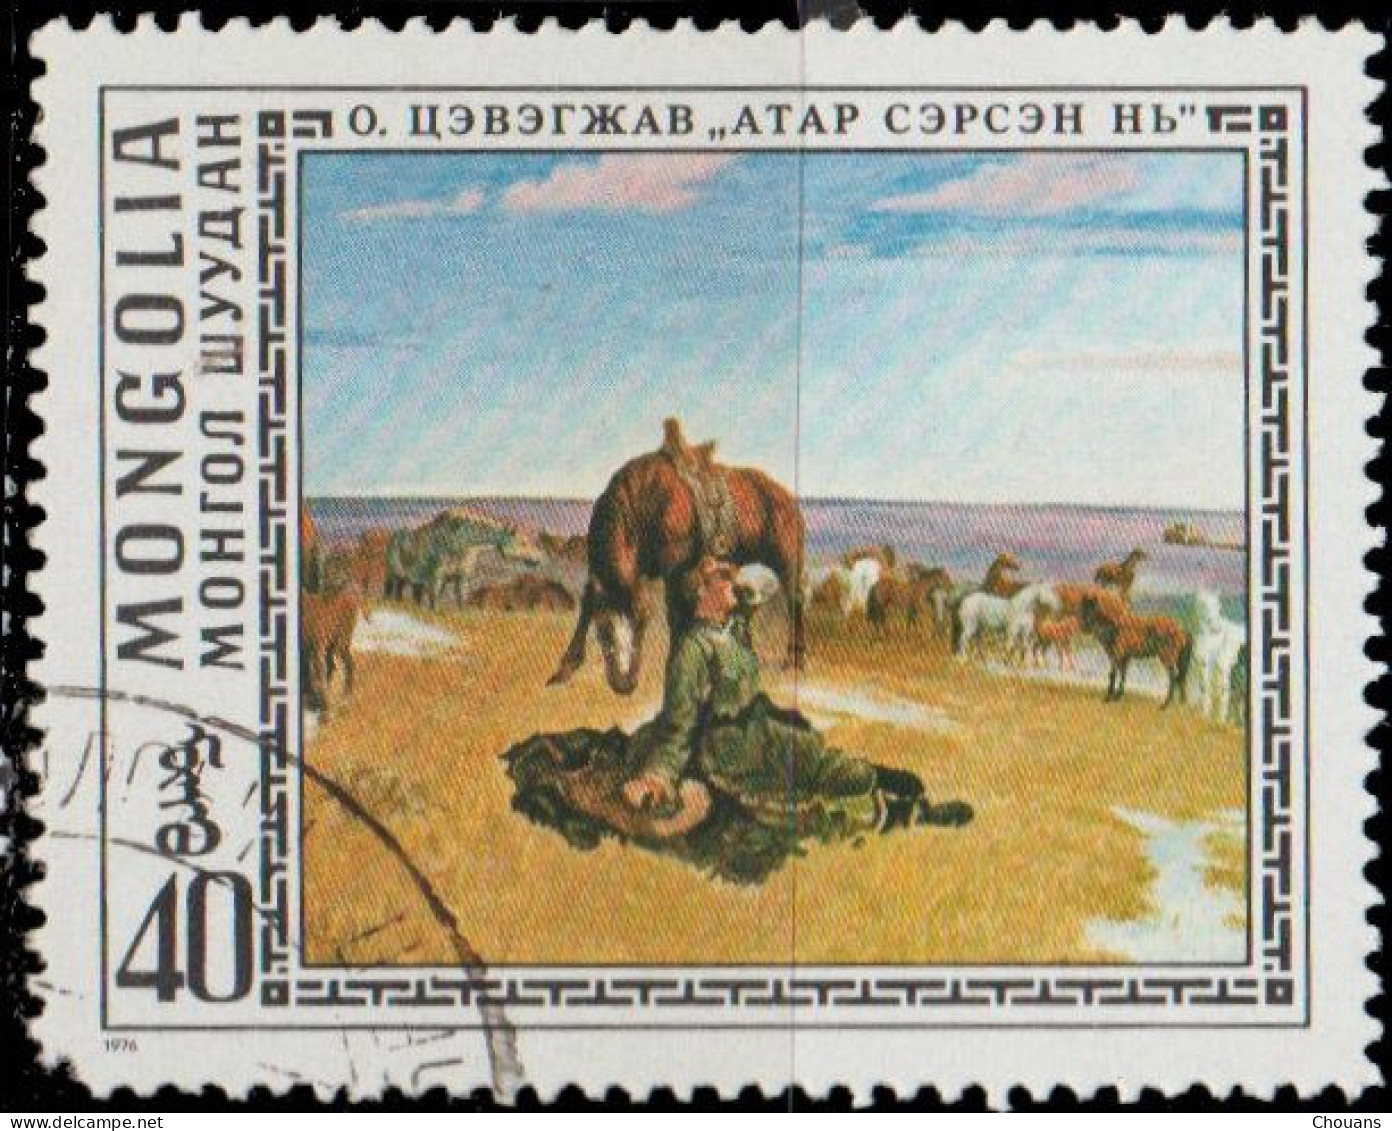 Mongolie 1976. ~ YT 860 - Tableaux - Chevaux - Mongolia